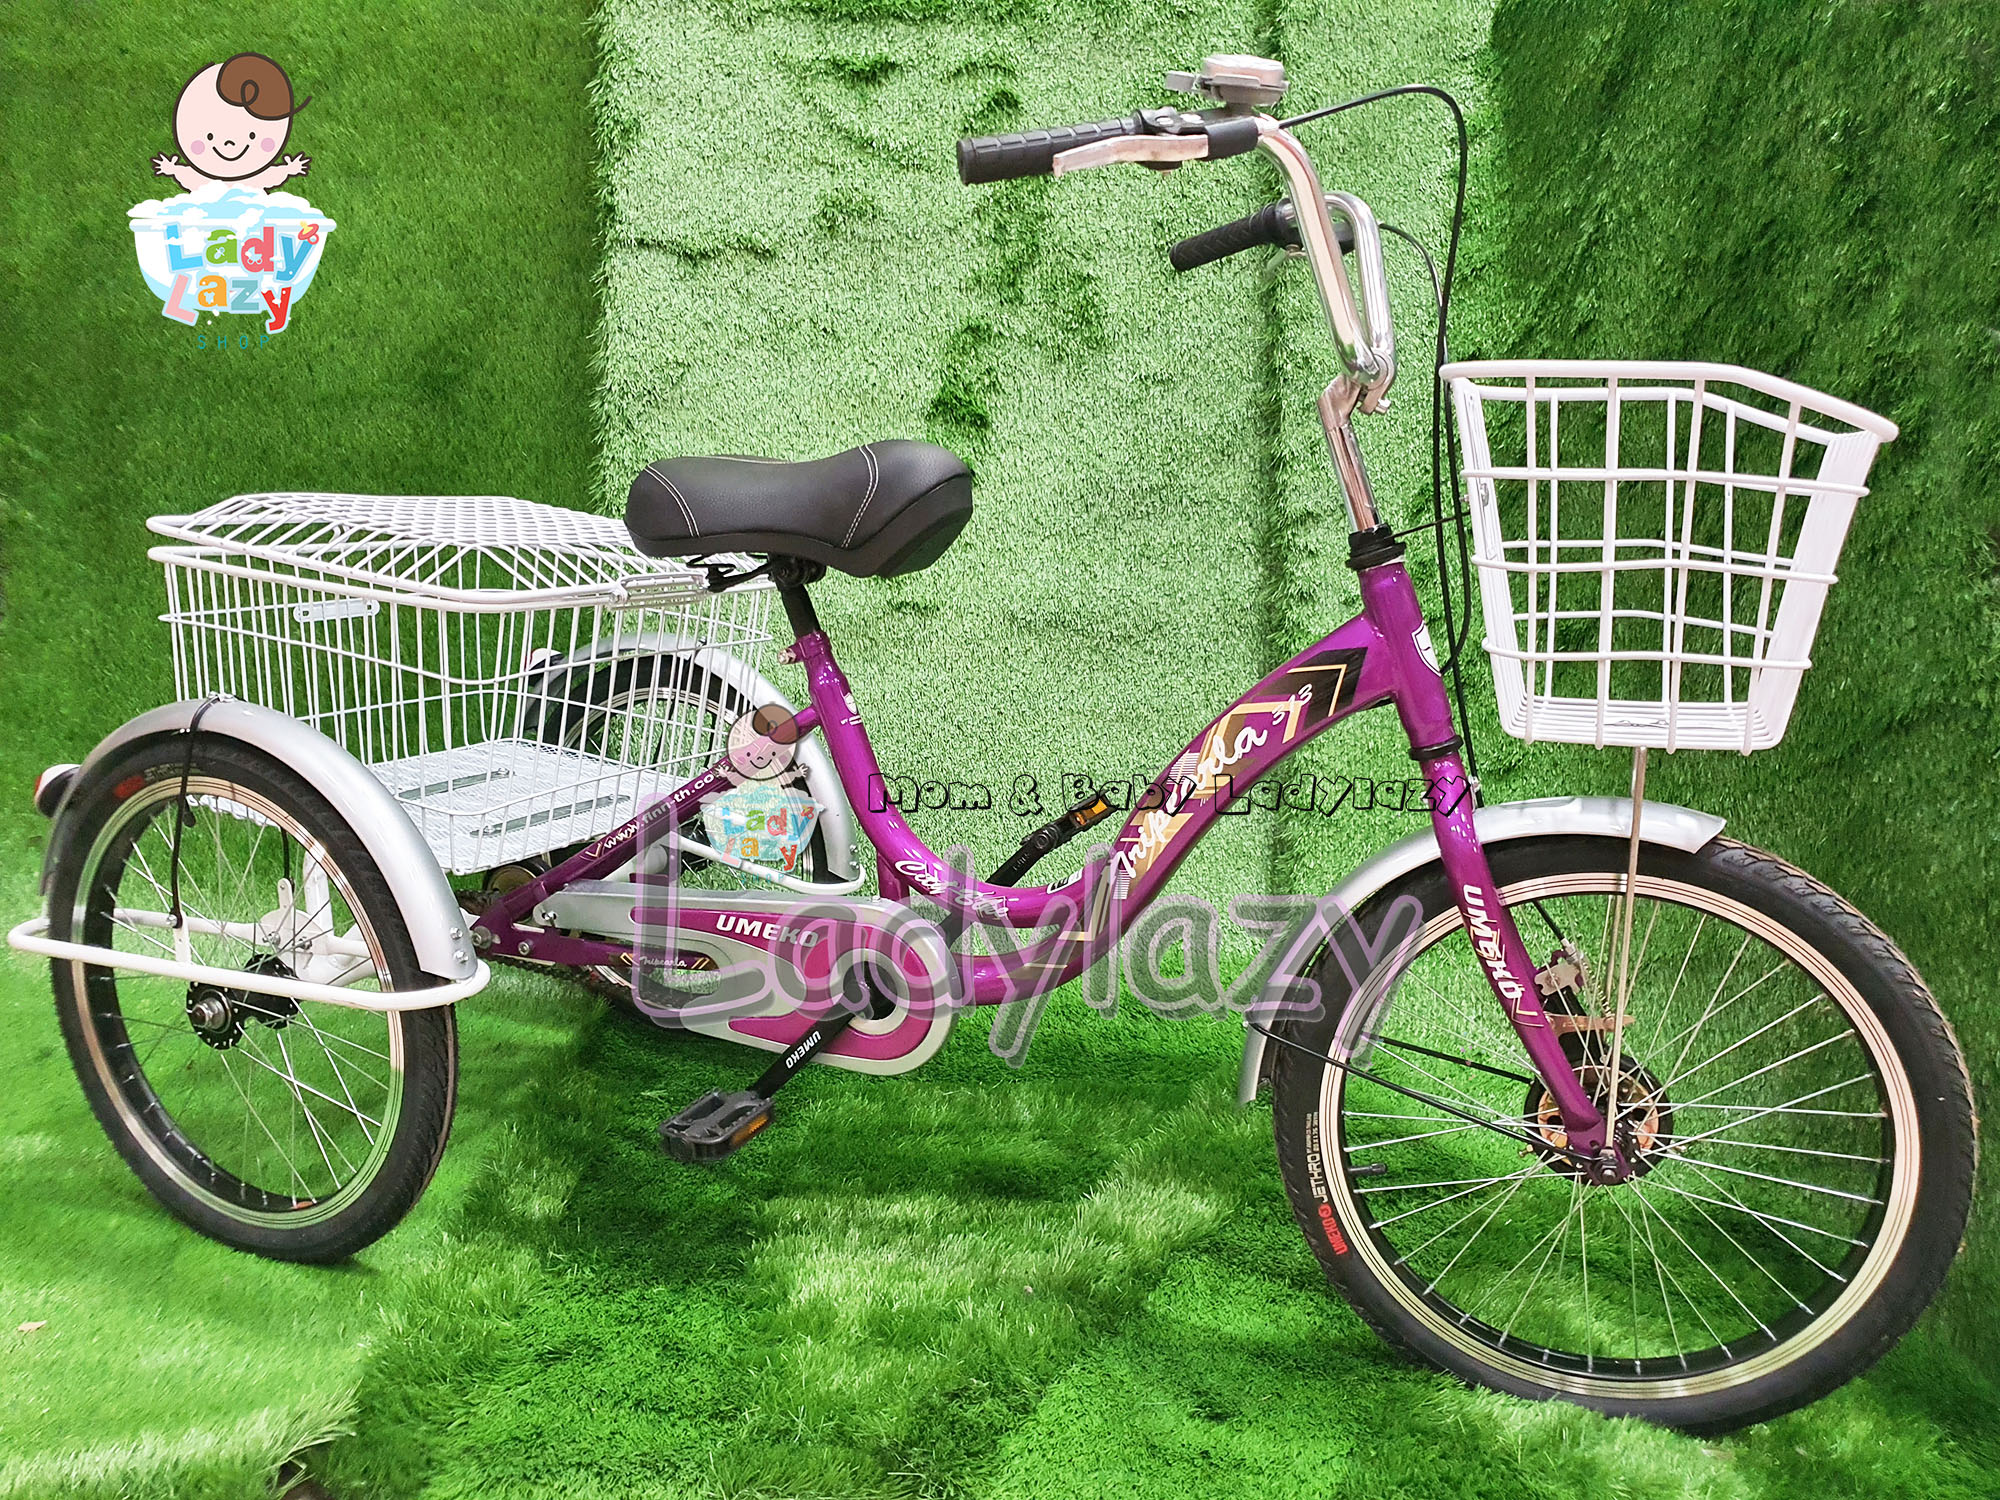 Ladylazyจักรยานสามล้อผู้ใหญ่ NEW UMEKO ขนาด 20 นิ้ว ตระกร้าใหญ่ อย่างดี สีม่วง